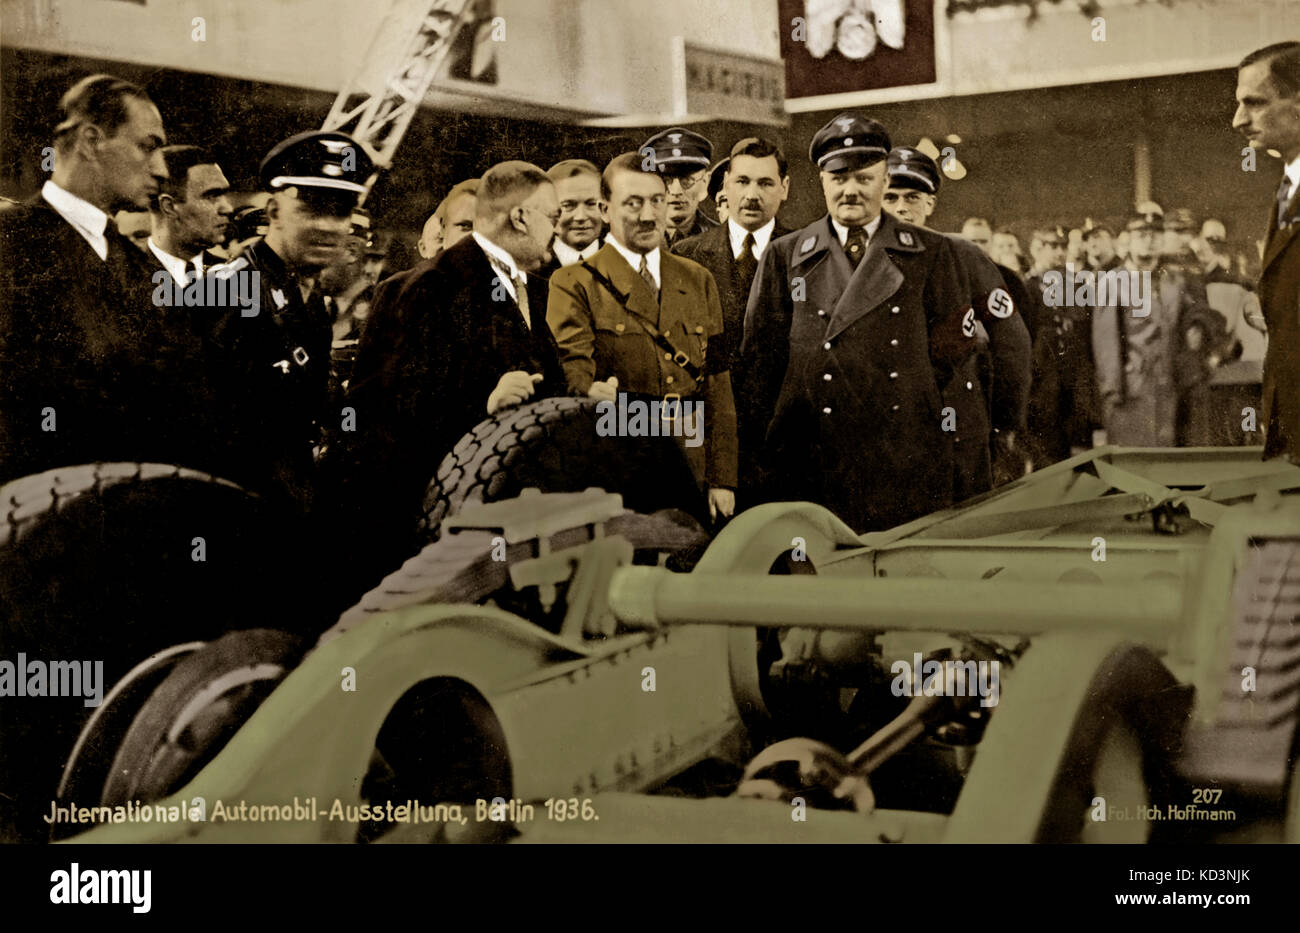 Adolf Hitler assistant à une exposition internationale d'automobiles à Berlin, 1936 Banque D'Images